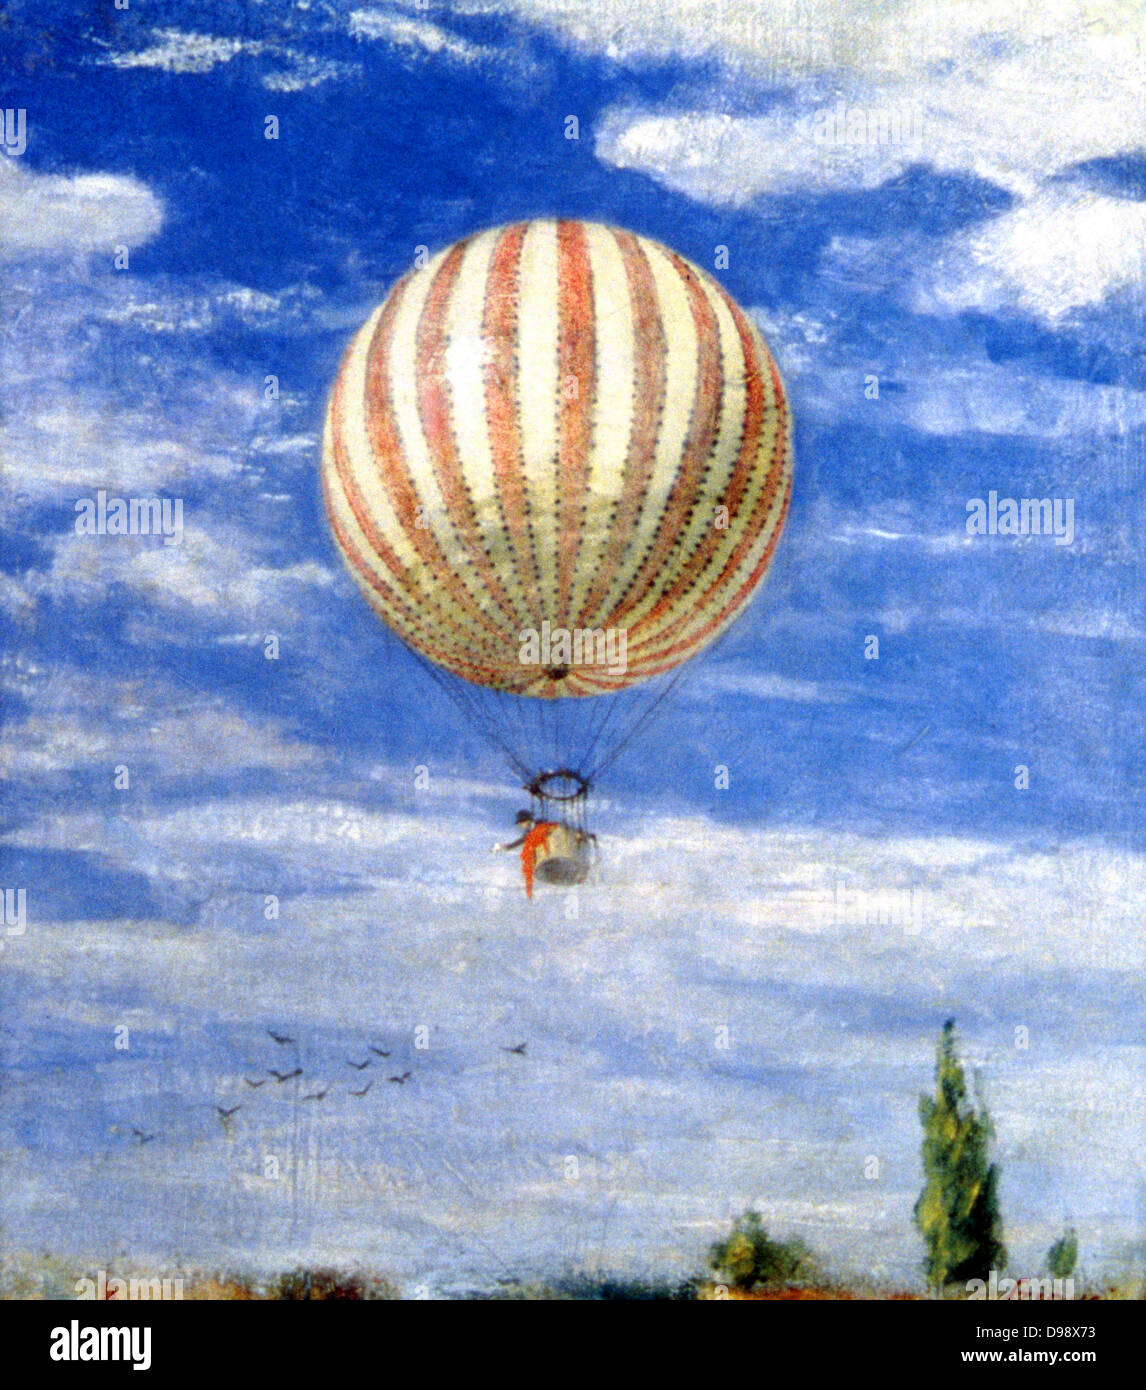 Le Ballon", 1878. Pal Szinyei Merse (1845-1920) peintre hongrois. L'homme en agitant de la télécabine d'un ballon rouge et blanc à rayures. Vol aéronautique bleu ciel blanc nuage de gaz Banque D'Images